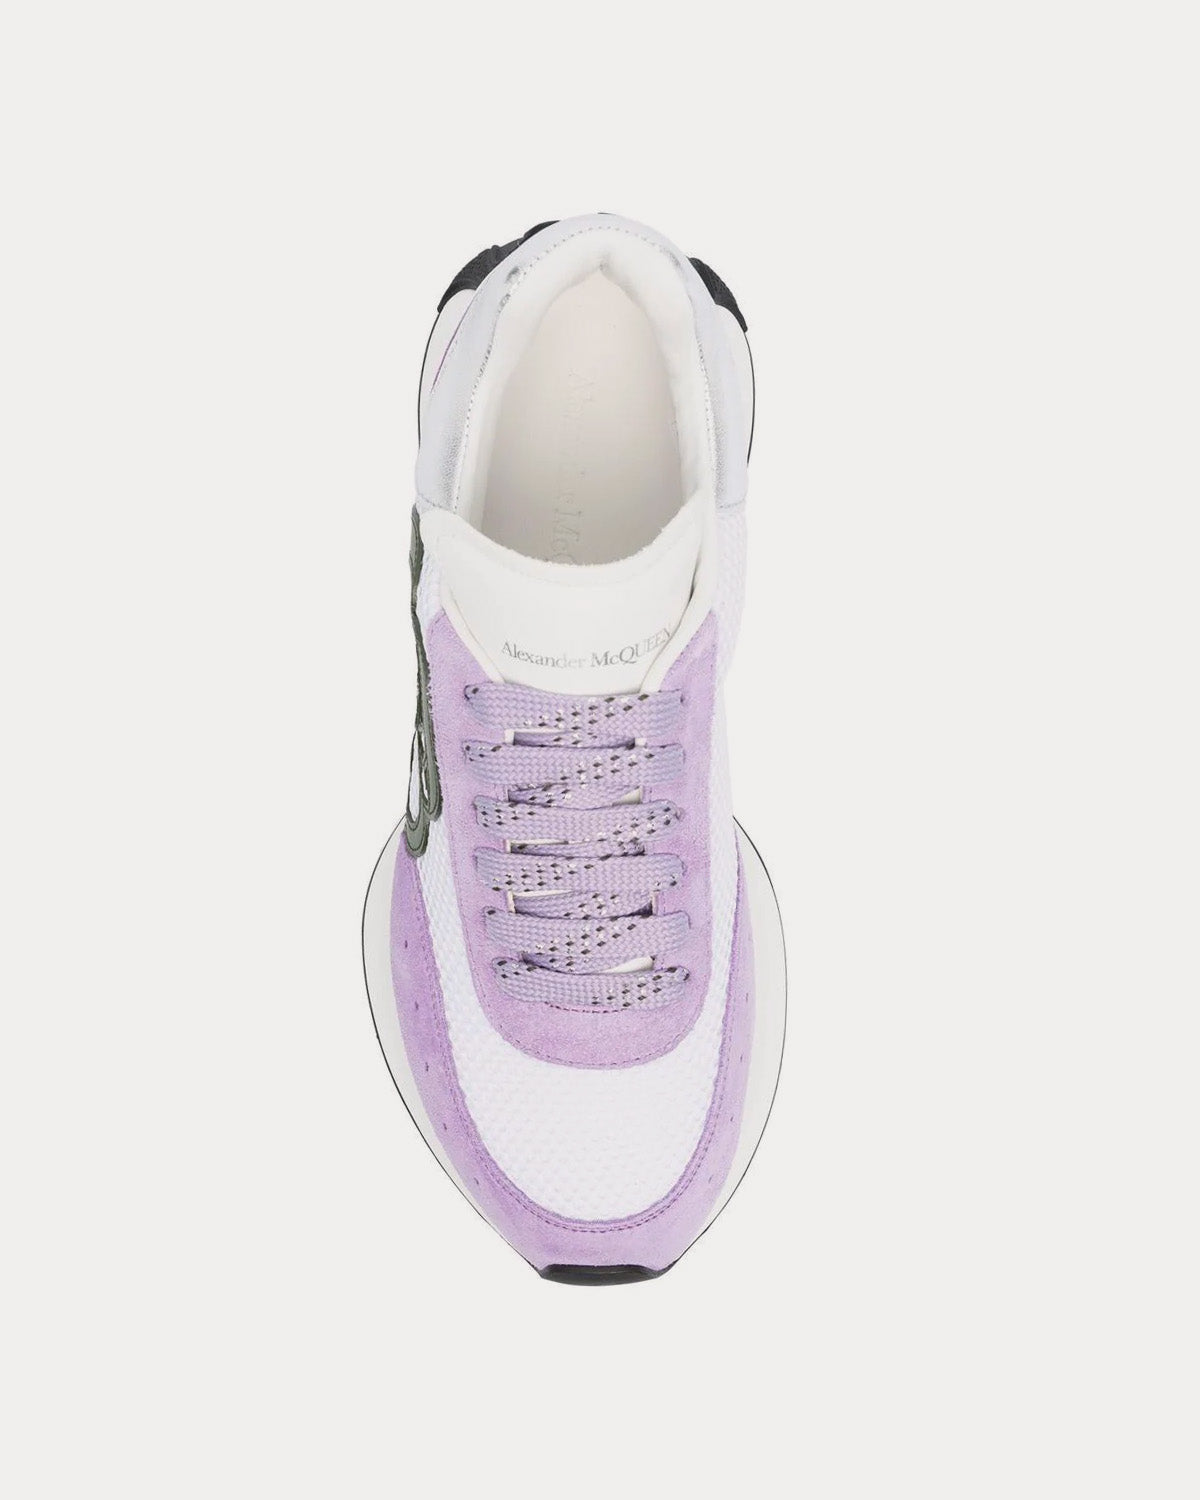 Alexander McQueen - Sprint Runner Purple / White Low Top Sneakers